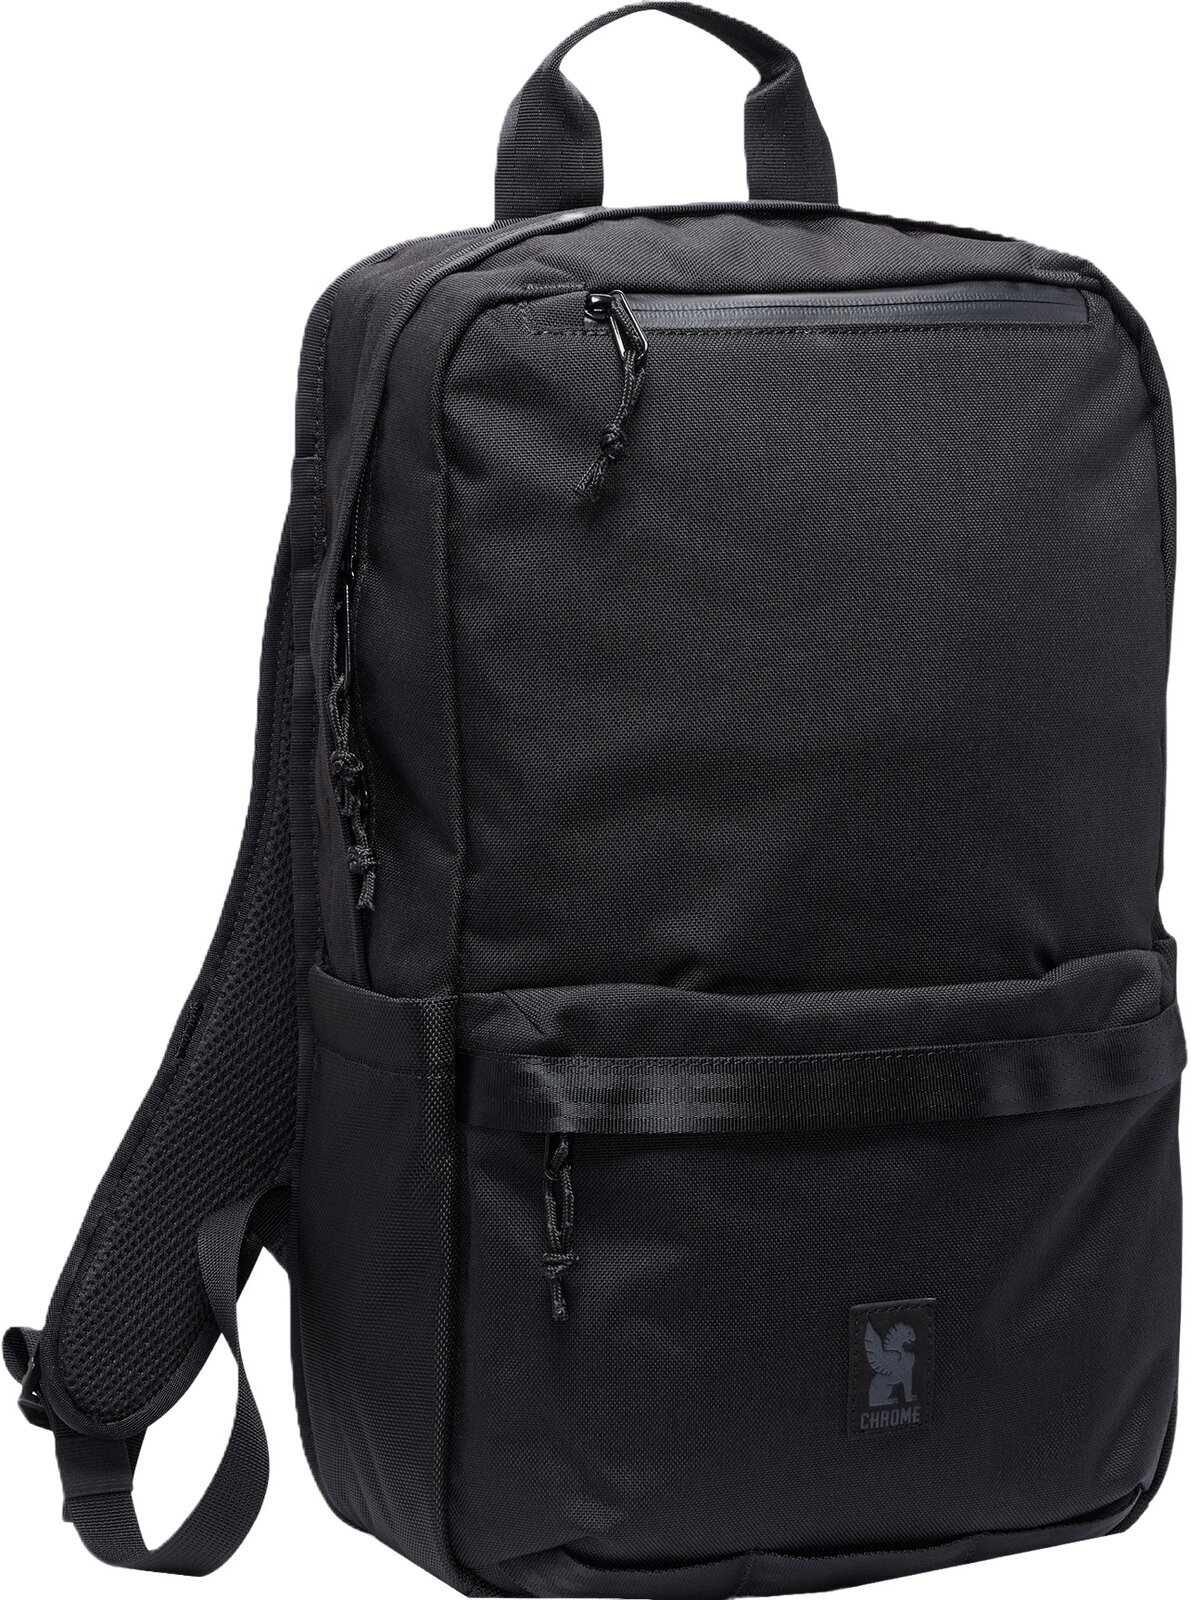 Lifestyle Rucksäck / Tasche Chrome Hondo Backpack Black 18 L Rucksack